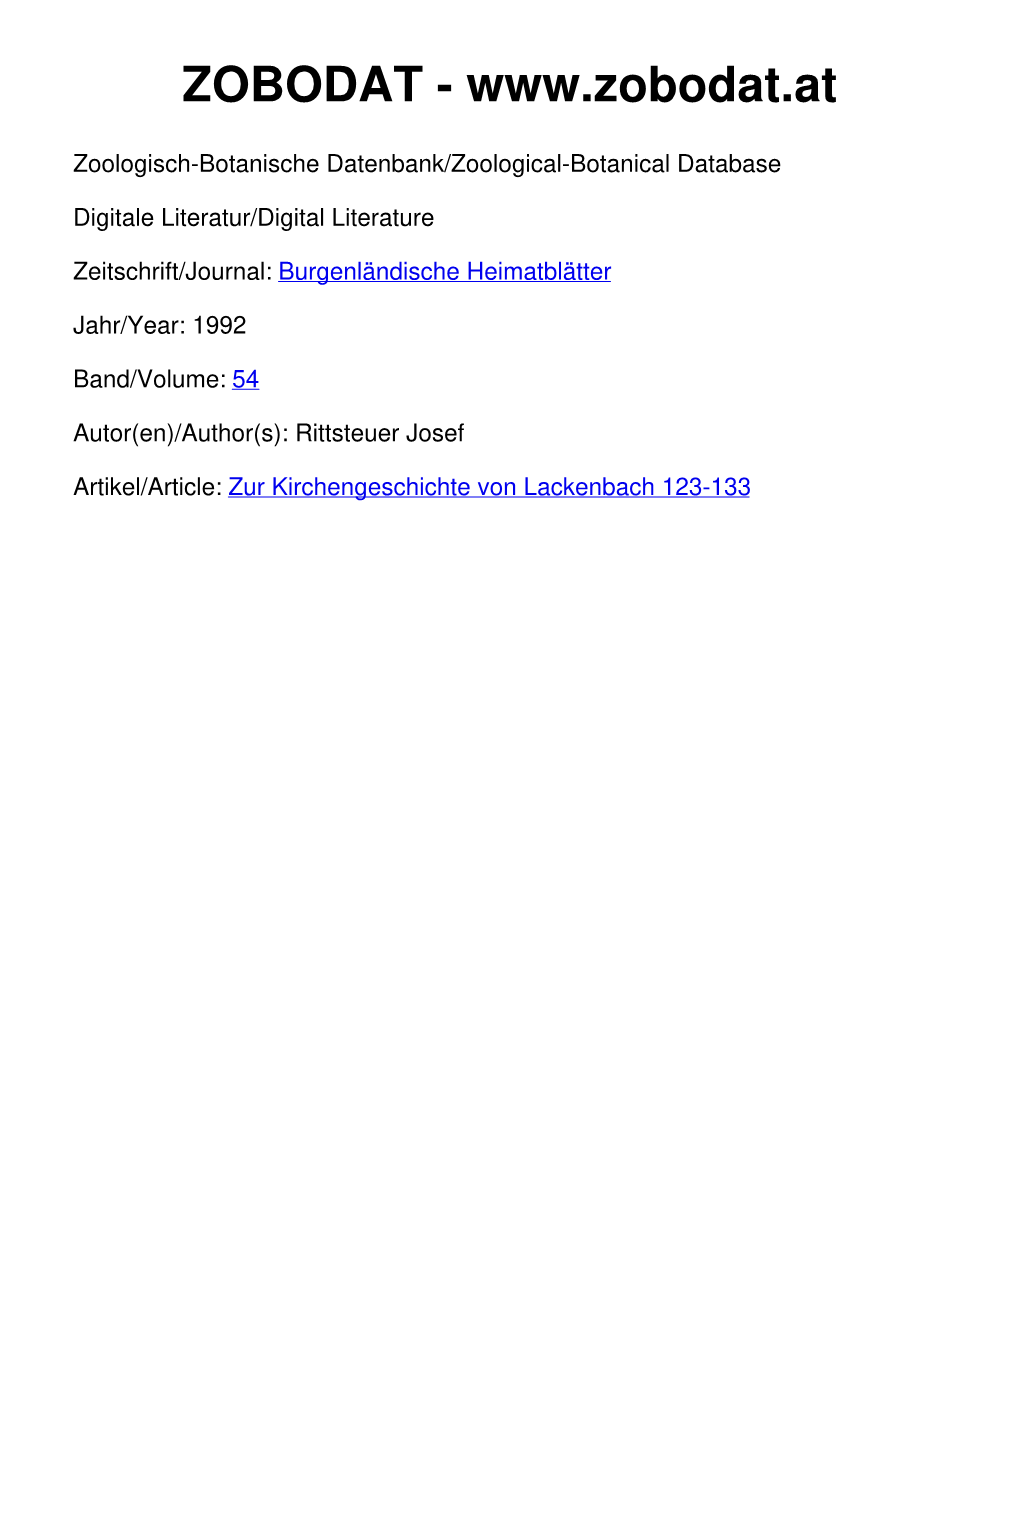 Zur Kirchengeschichte Von Lackenbach 123-133 ©Amt Der Burgenländischen Landesregierung, Landesarchiv, Download Unter